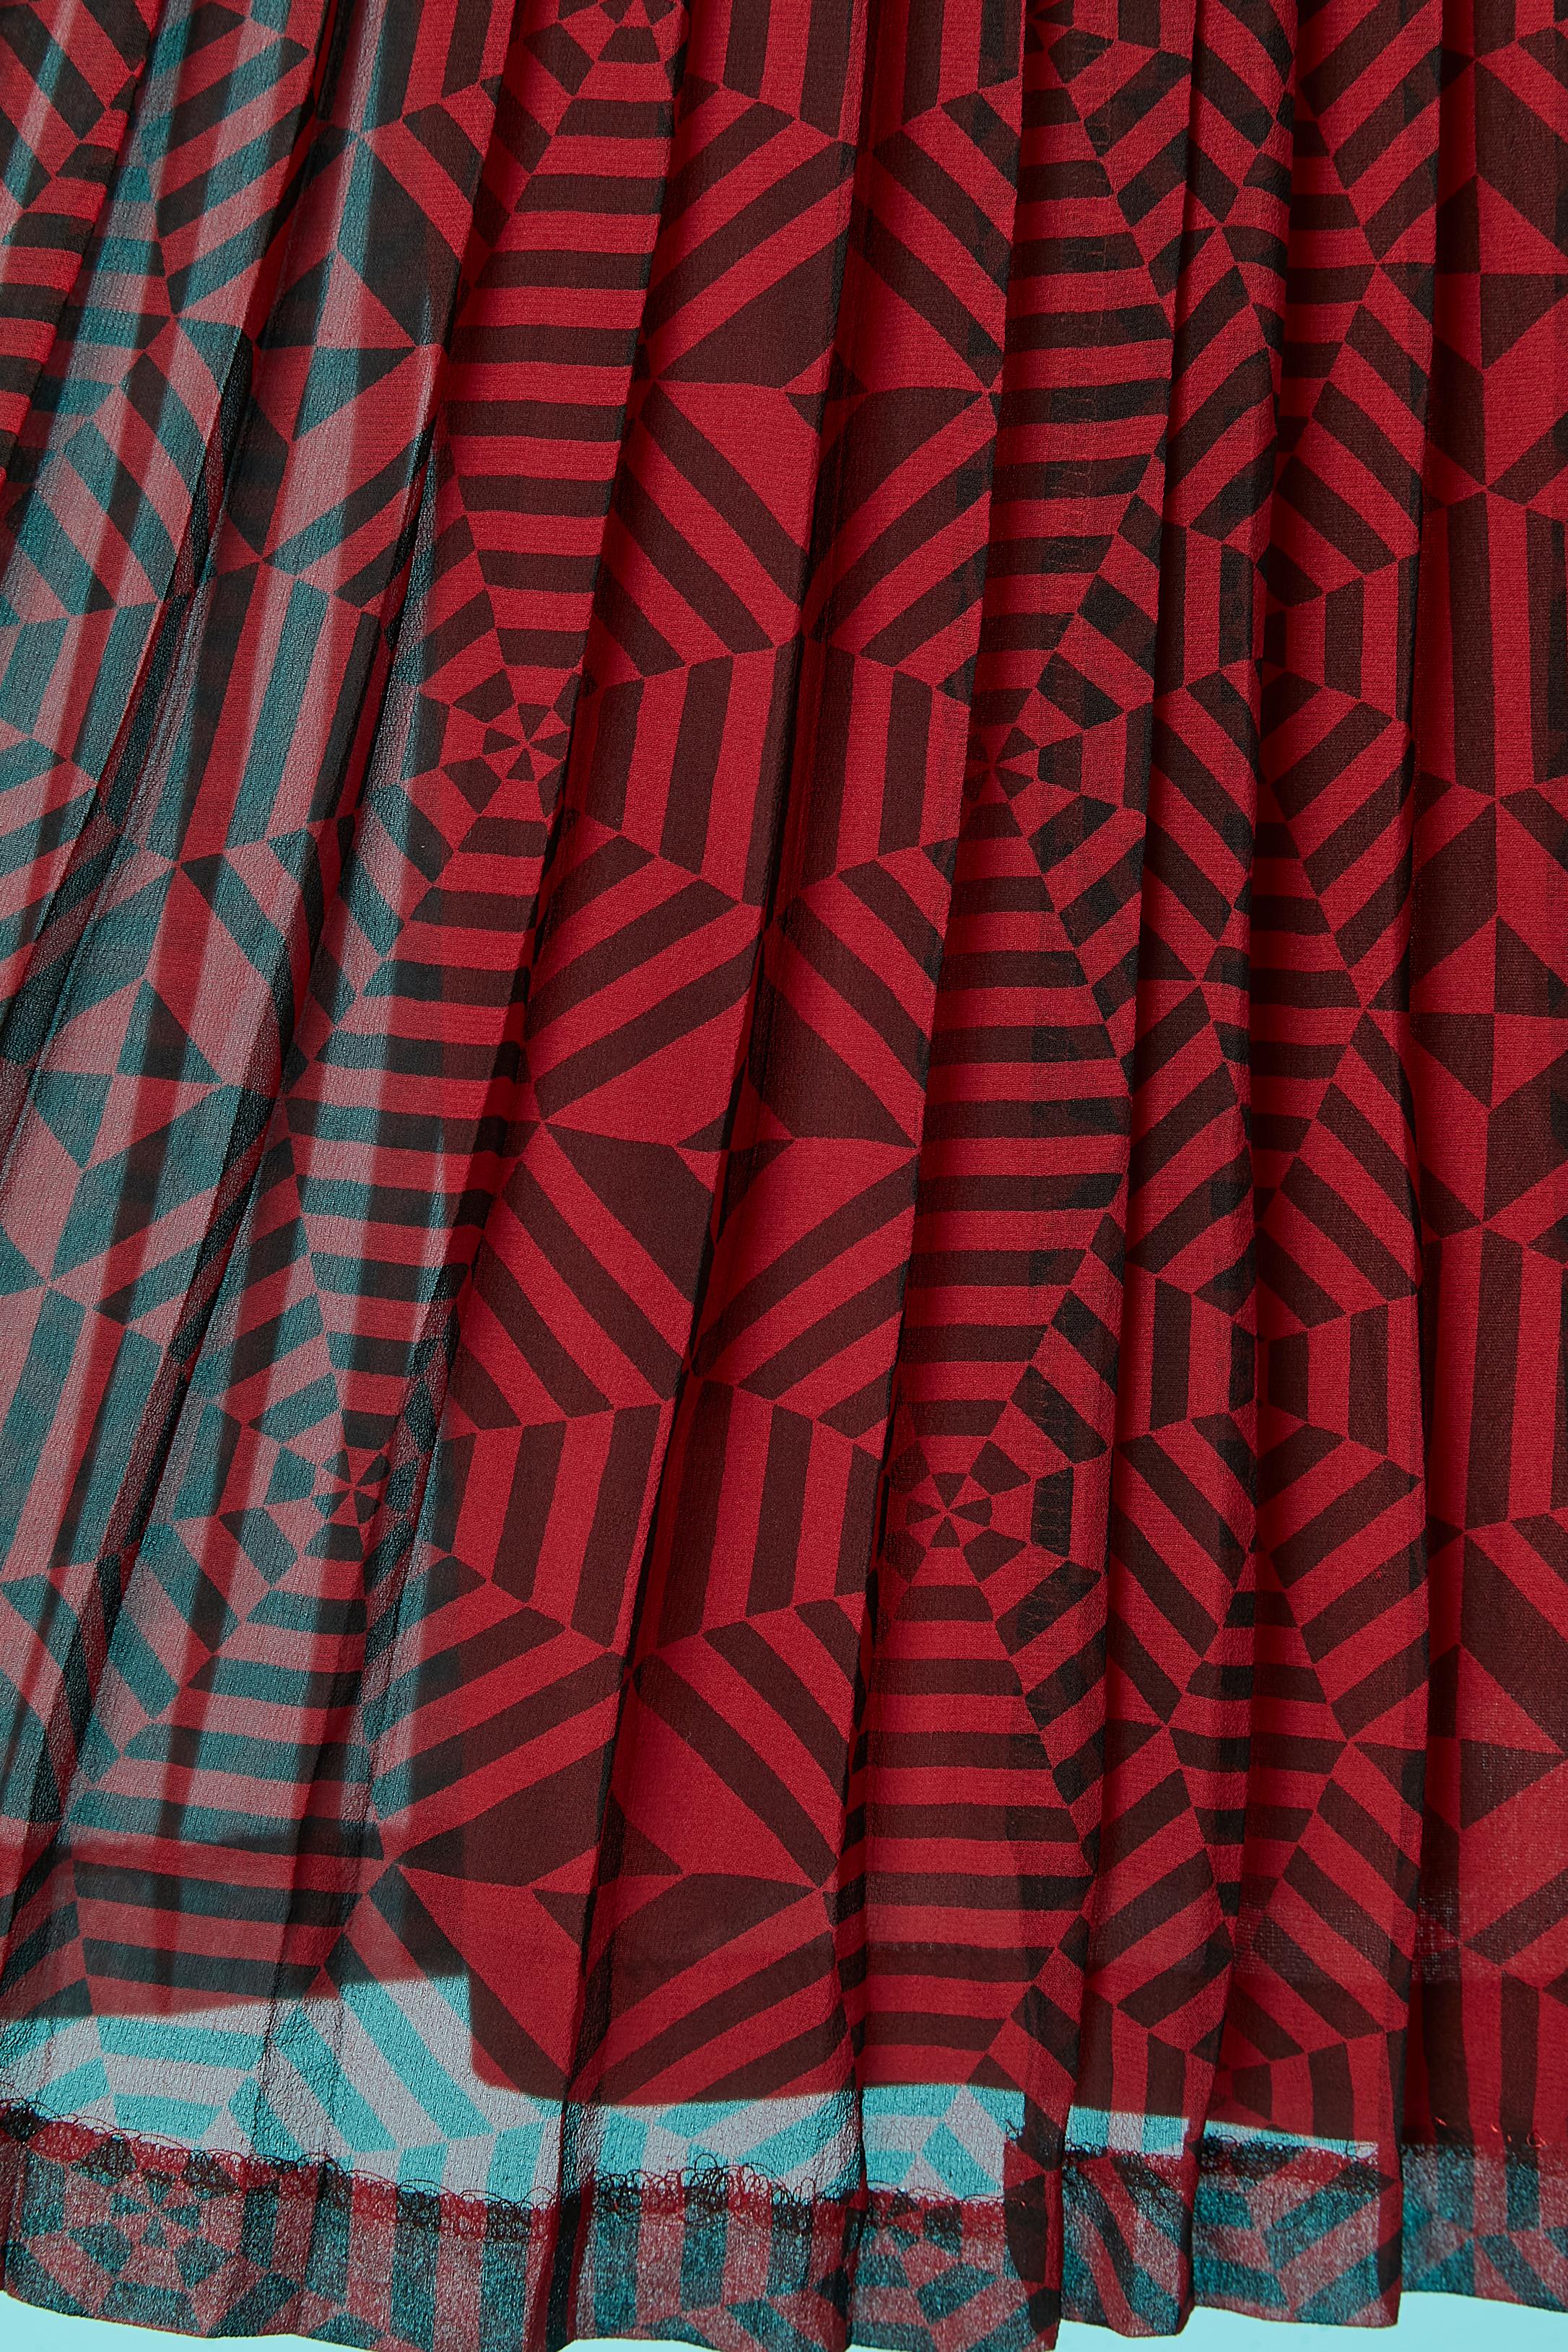 Marron Ensemble imprimé graphique noir et rouge sur mousseline de soie Guy Laroche Diffusion  en vente